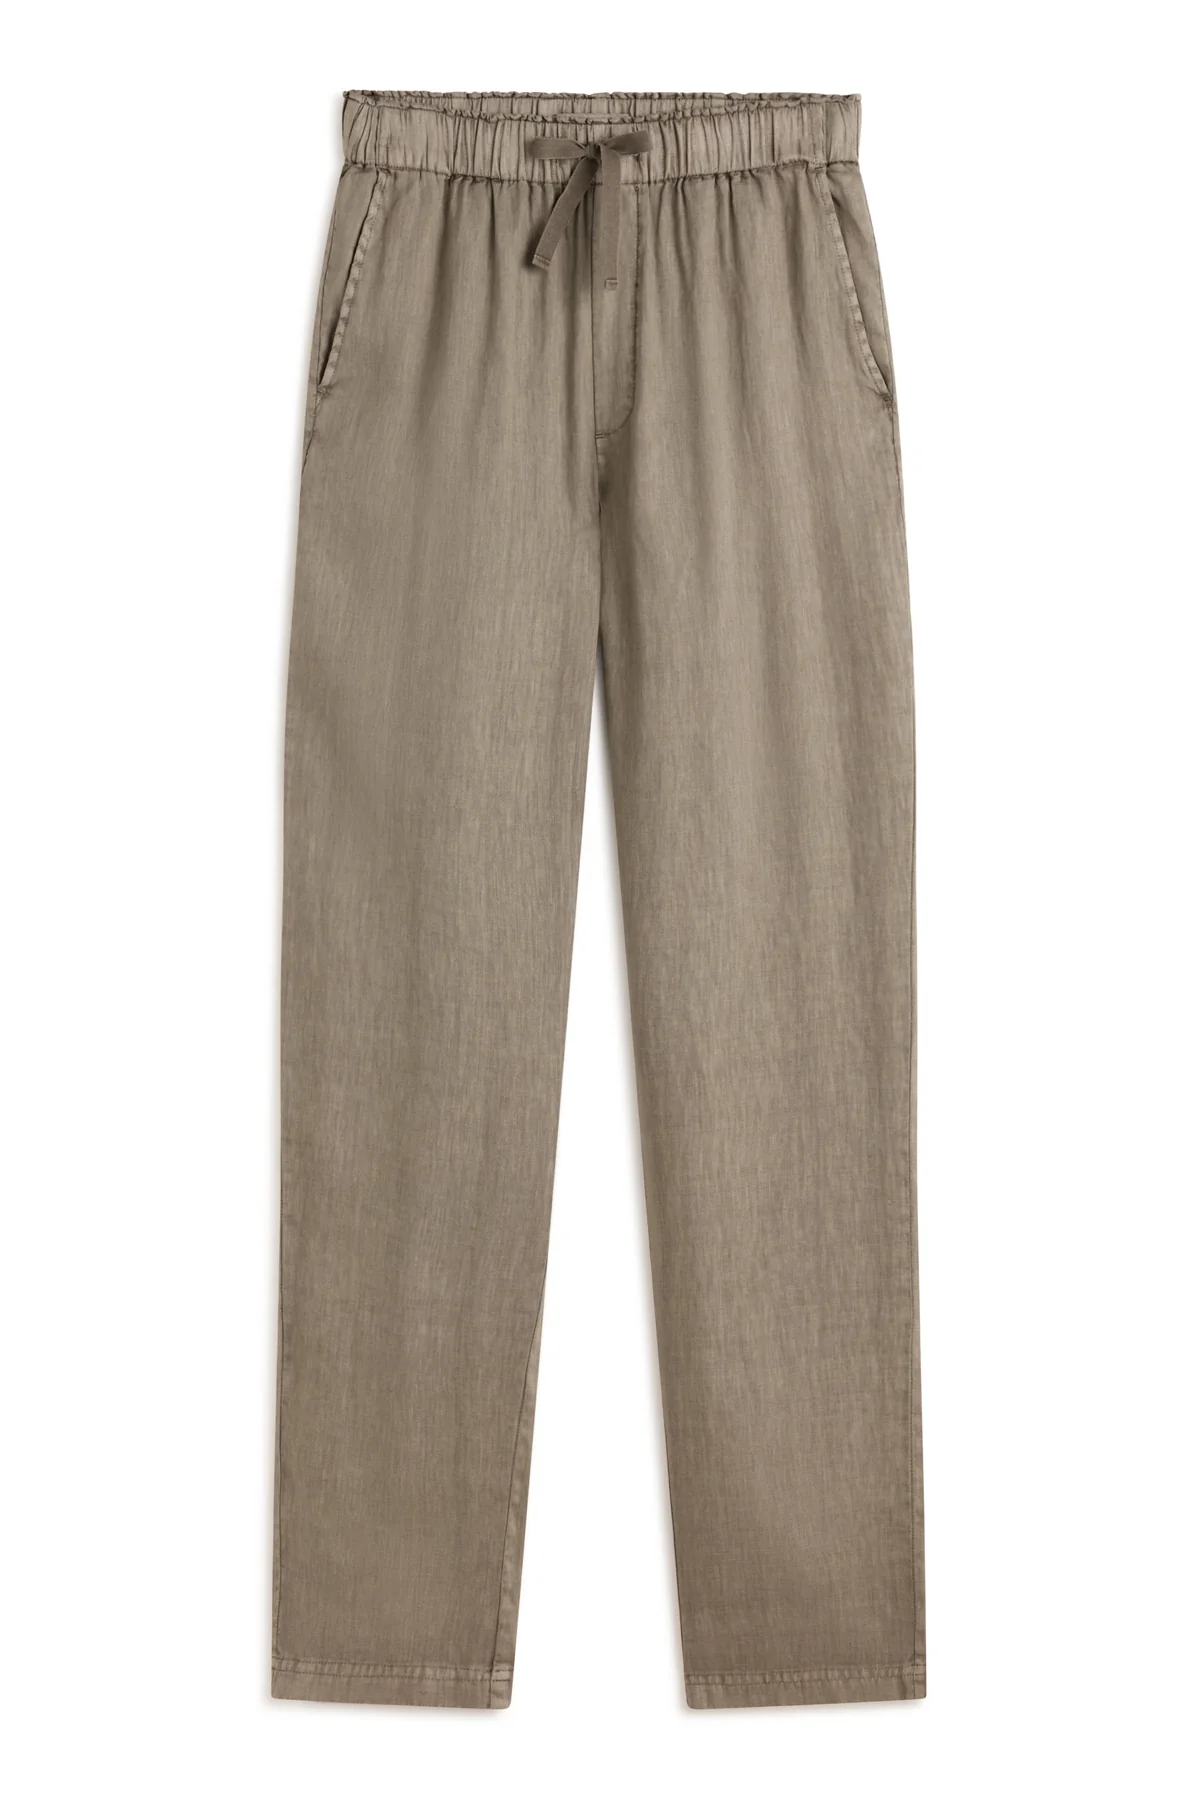 ECOALF pantalón en lino color caqui - 5